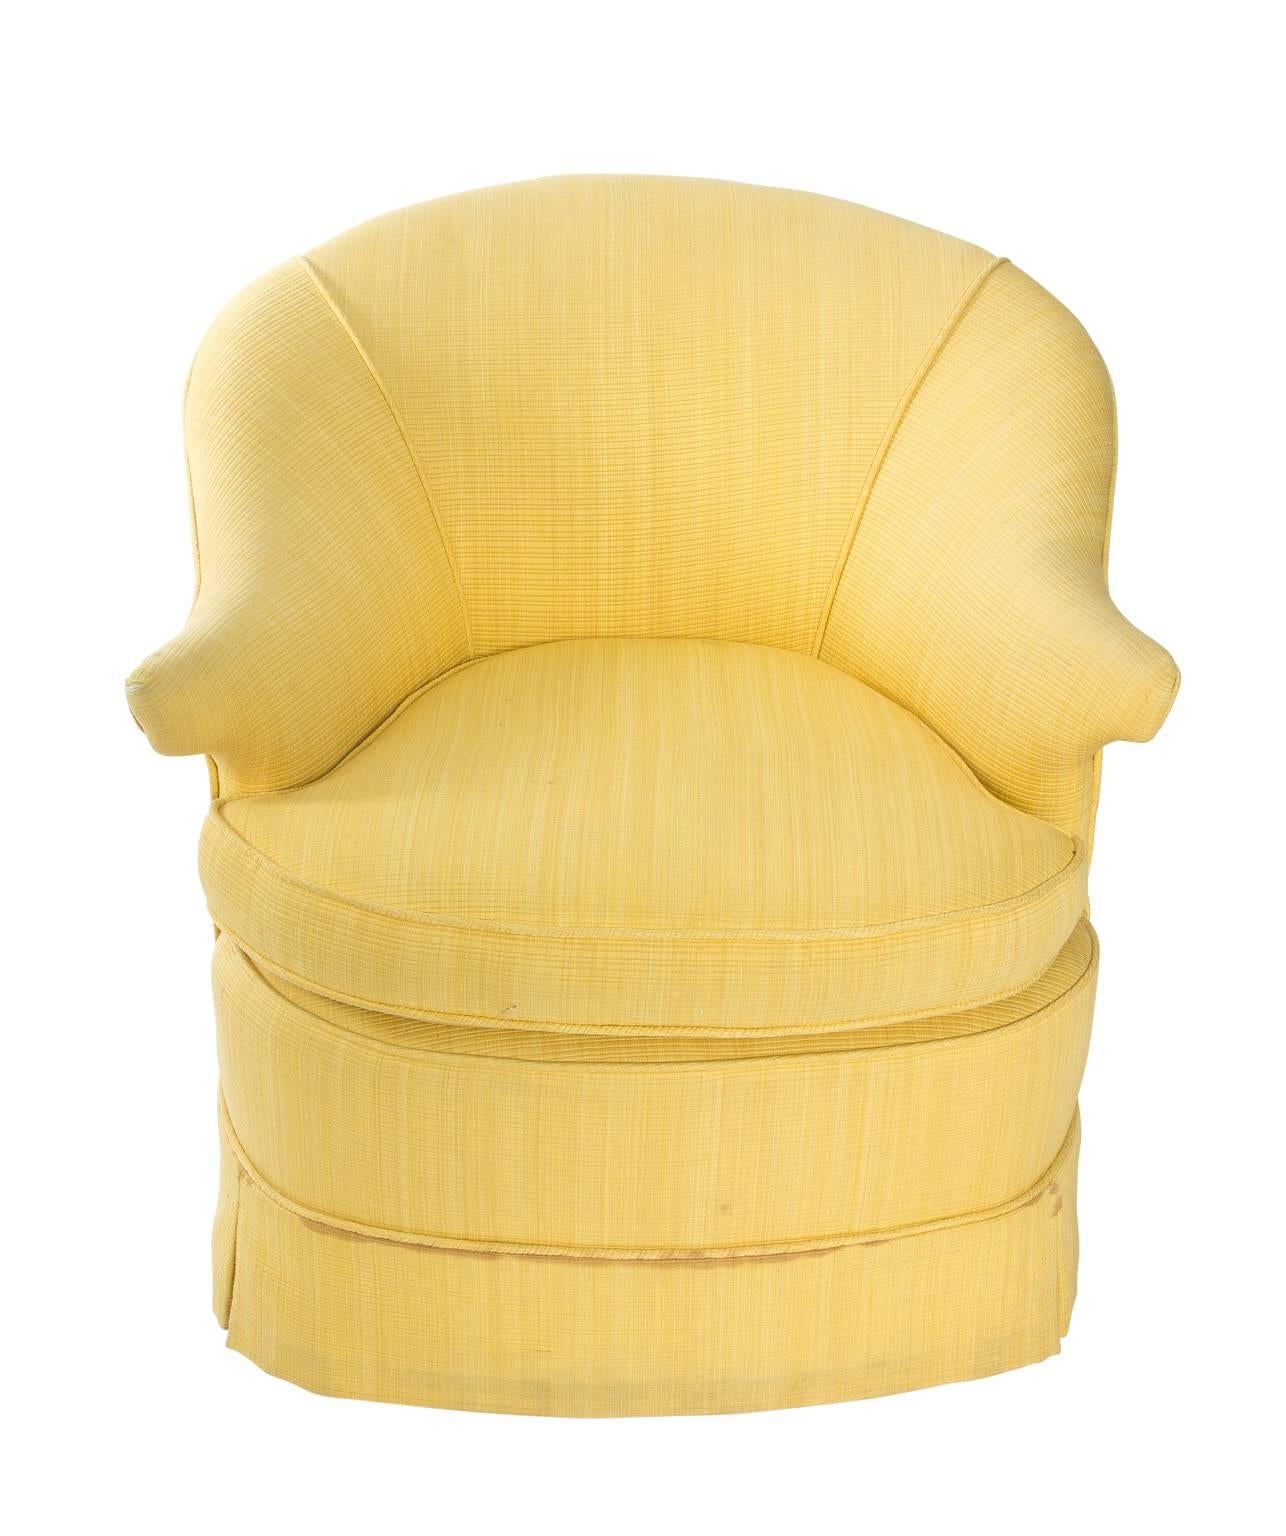 20th Century Pair of Yellow Slipper Chairs